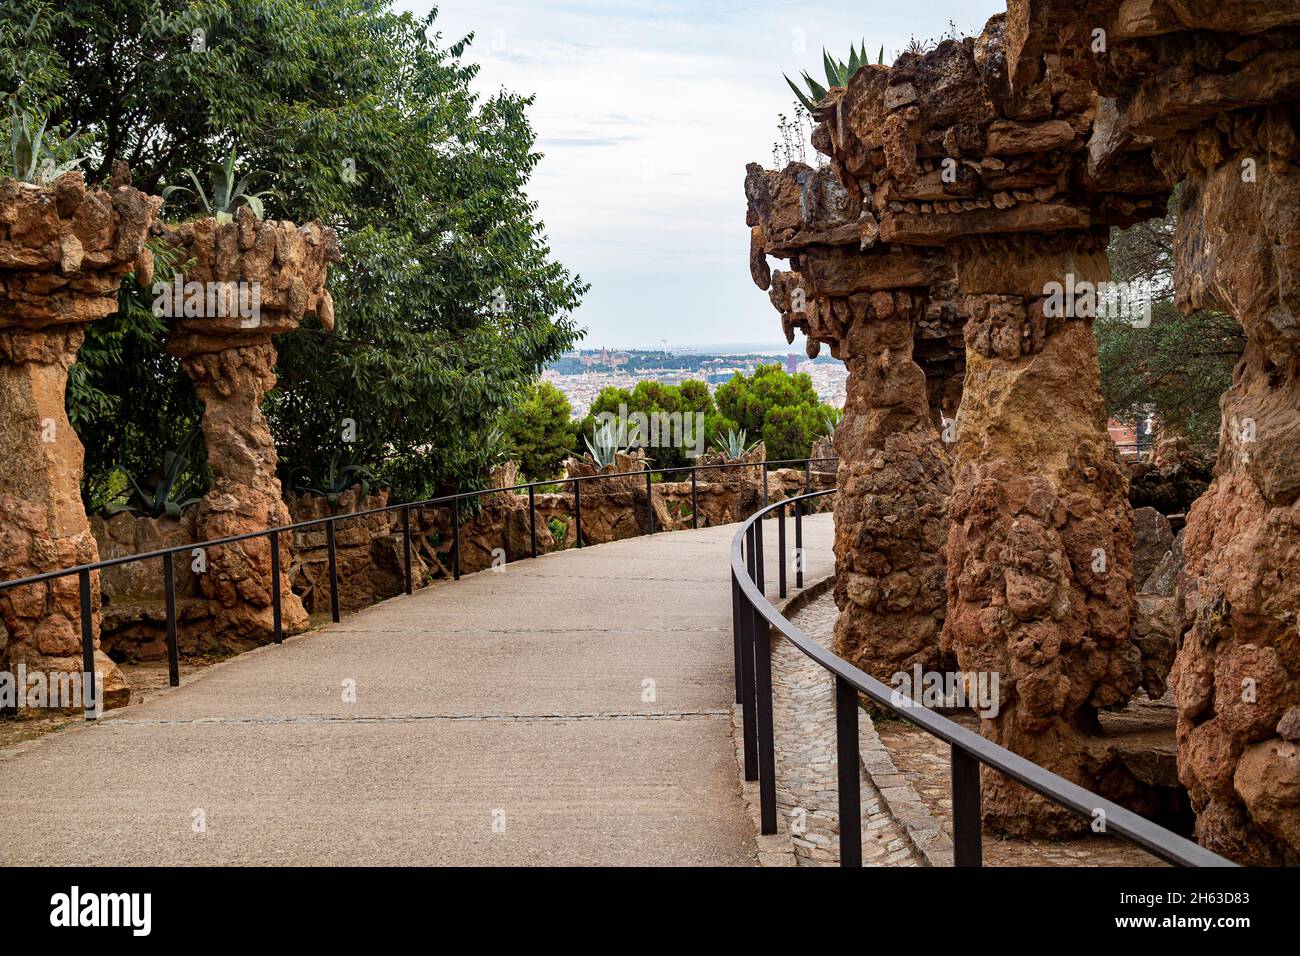 arco in pietra nel parco artistico guell di antoni gaudí a barcellona, spagna, questo parco modernista è stato costruito tra il 1900 e il 1914 ed è una famosa attrazione turistica. Foto Stock